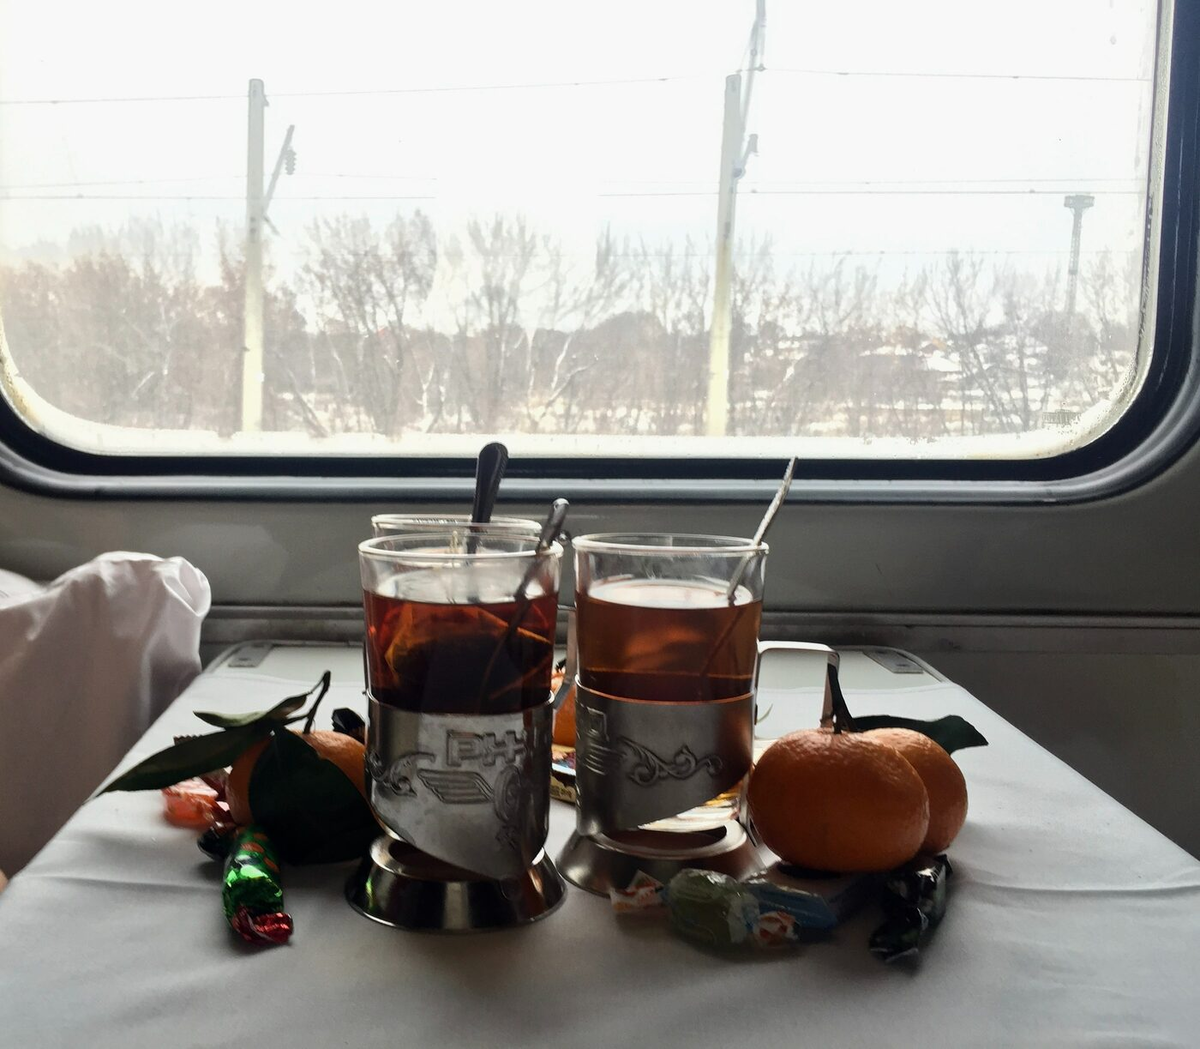 Приятного путешествия на поезде